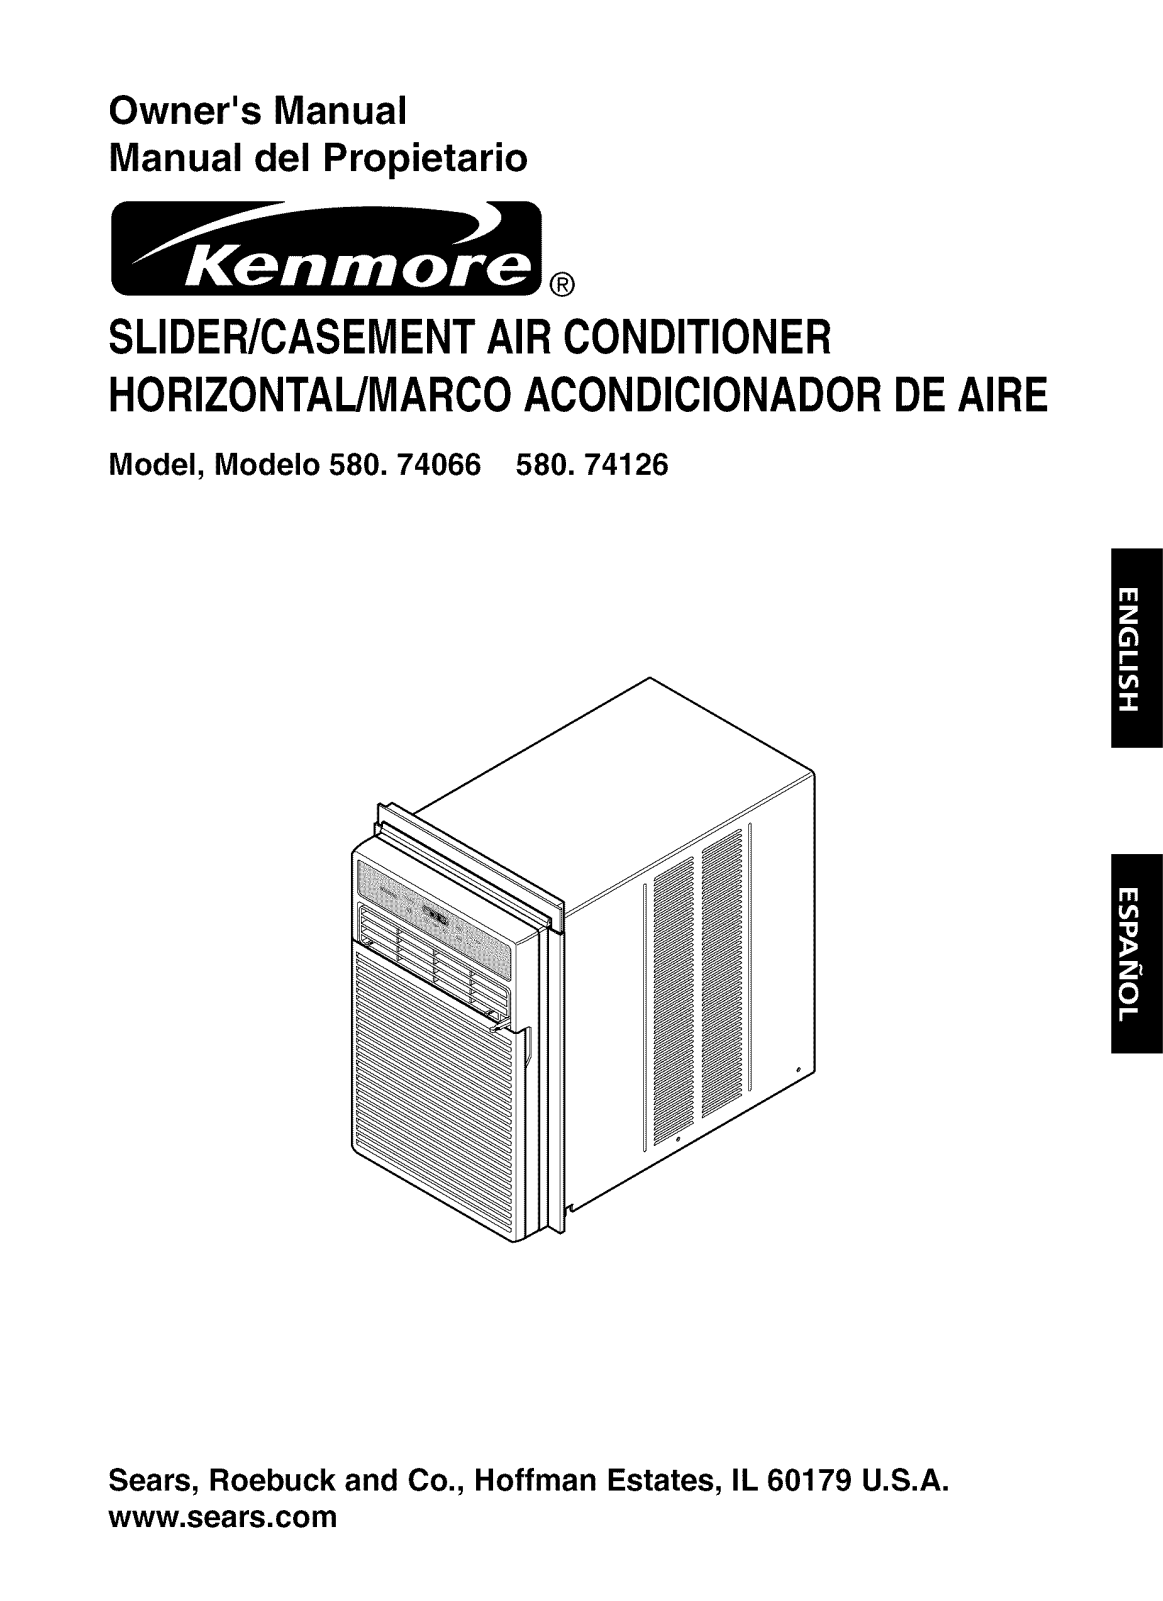 Kenmore 58074126400, 58074066400 Owner’s Manual